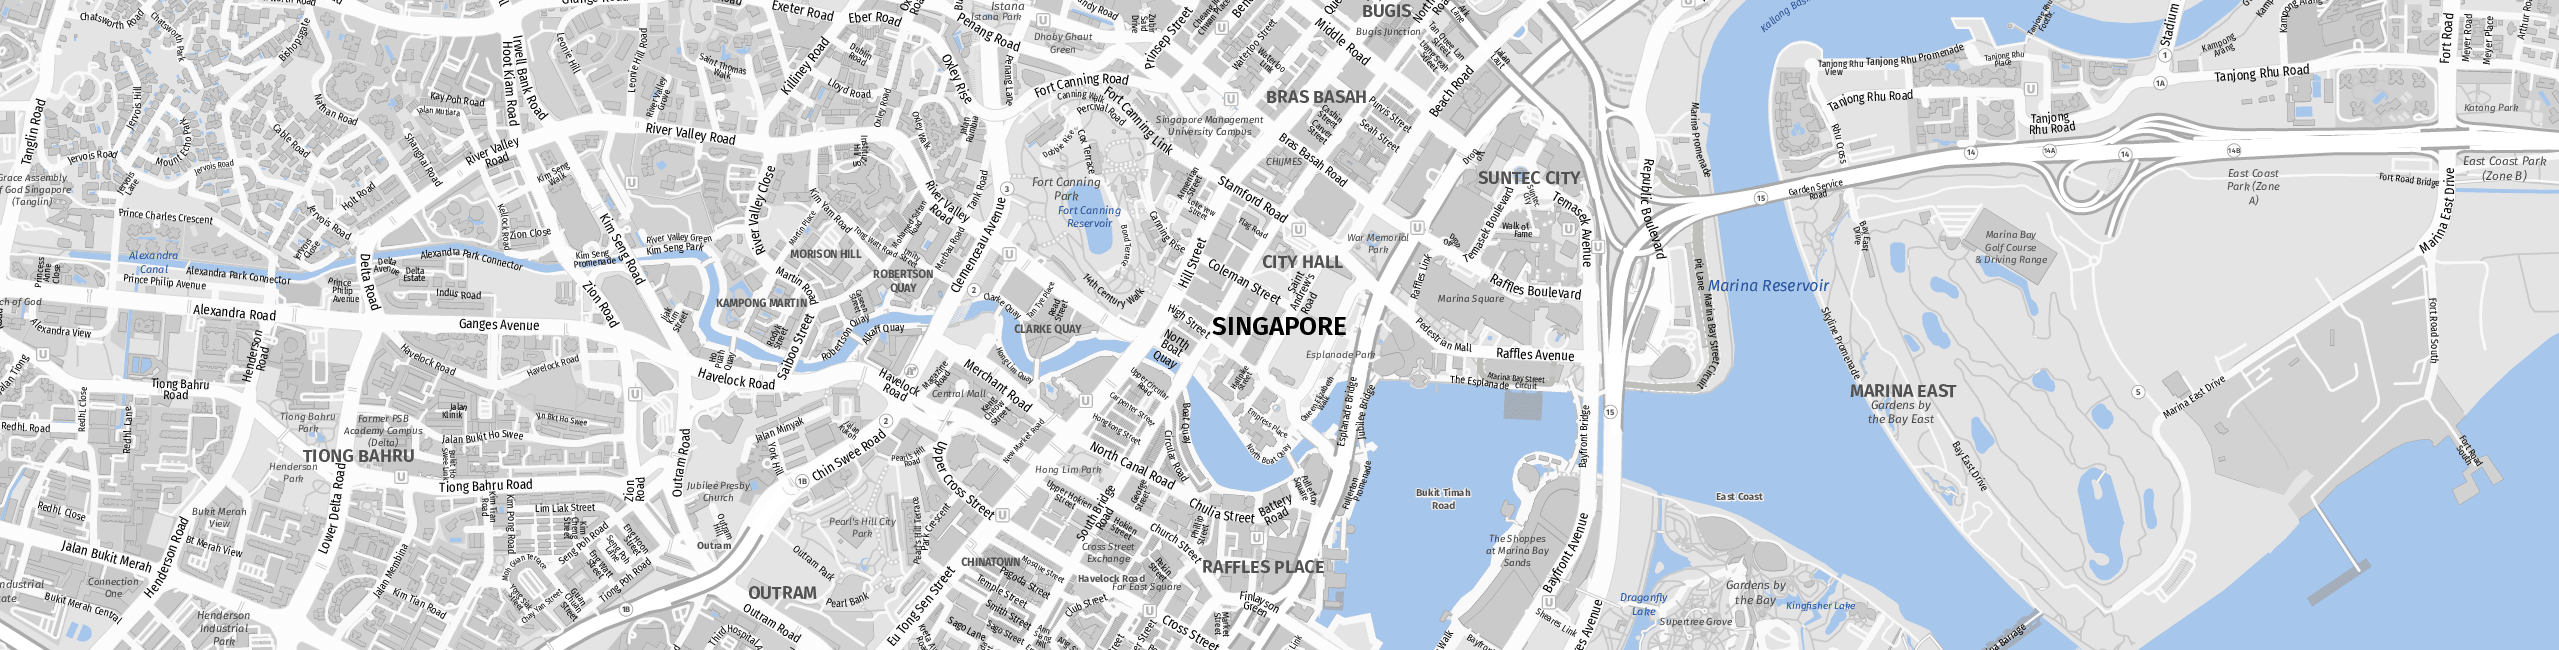 Stadtplan Singapur zum Downloaden.